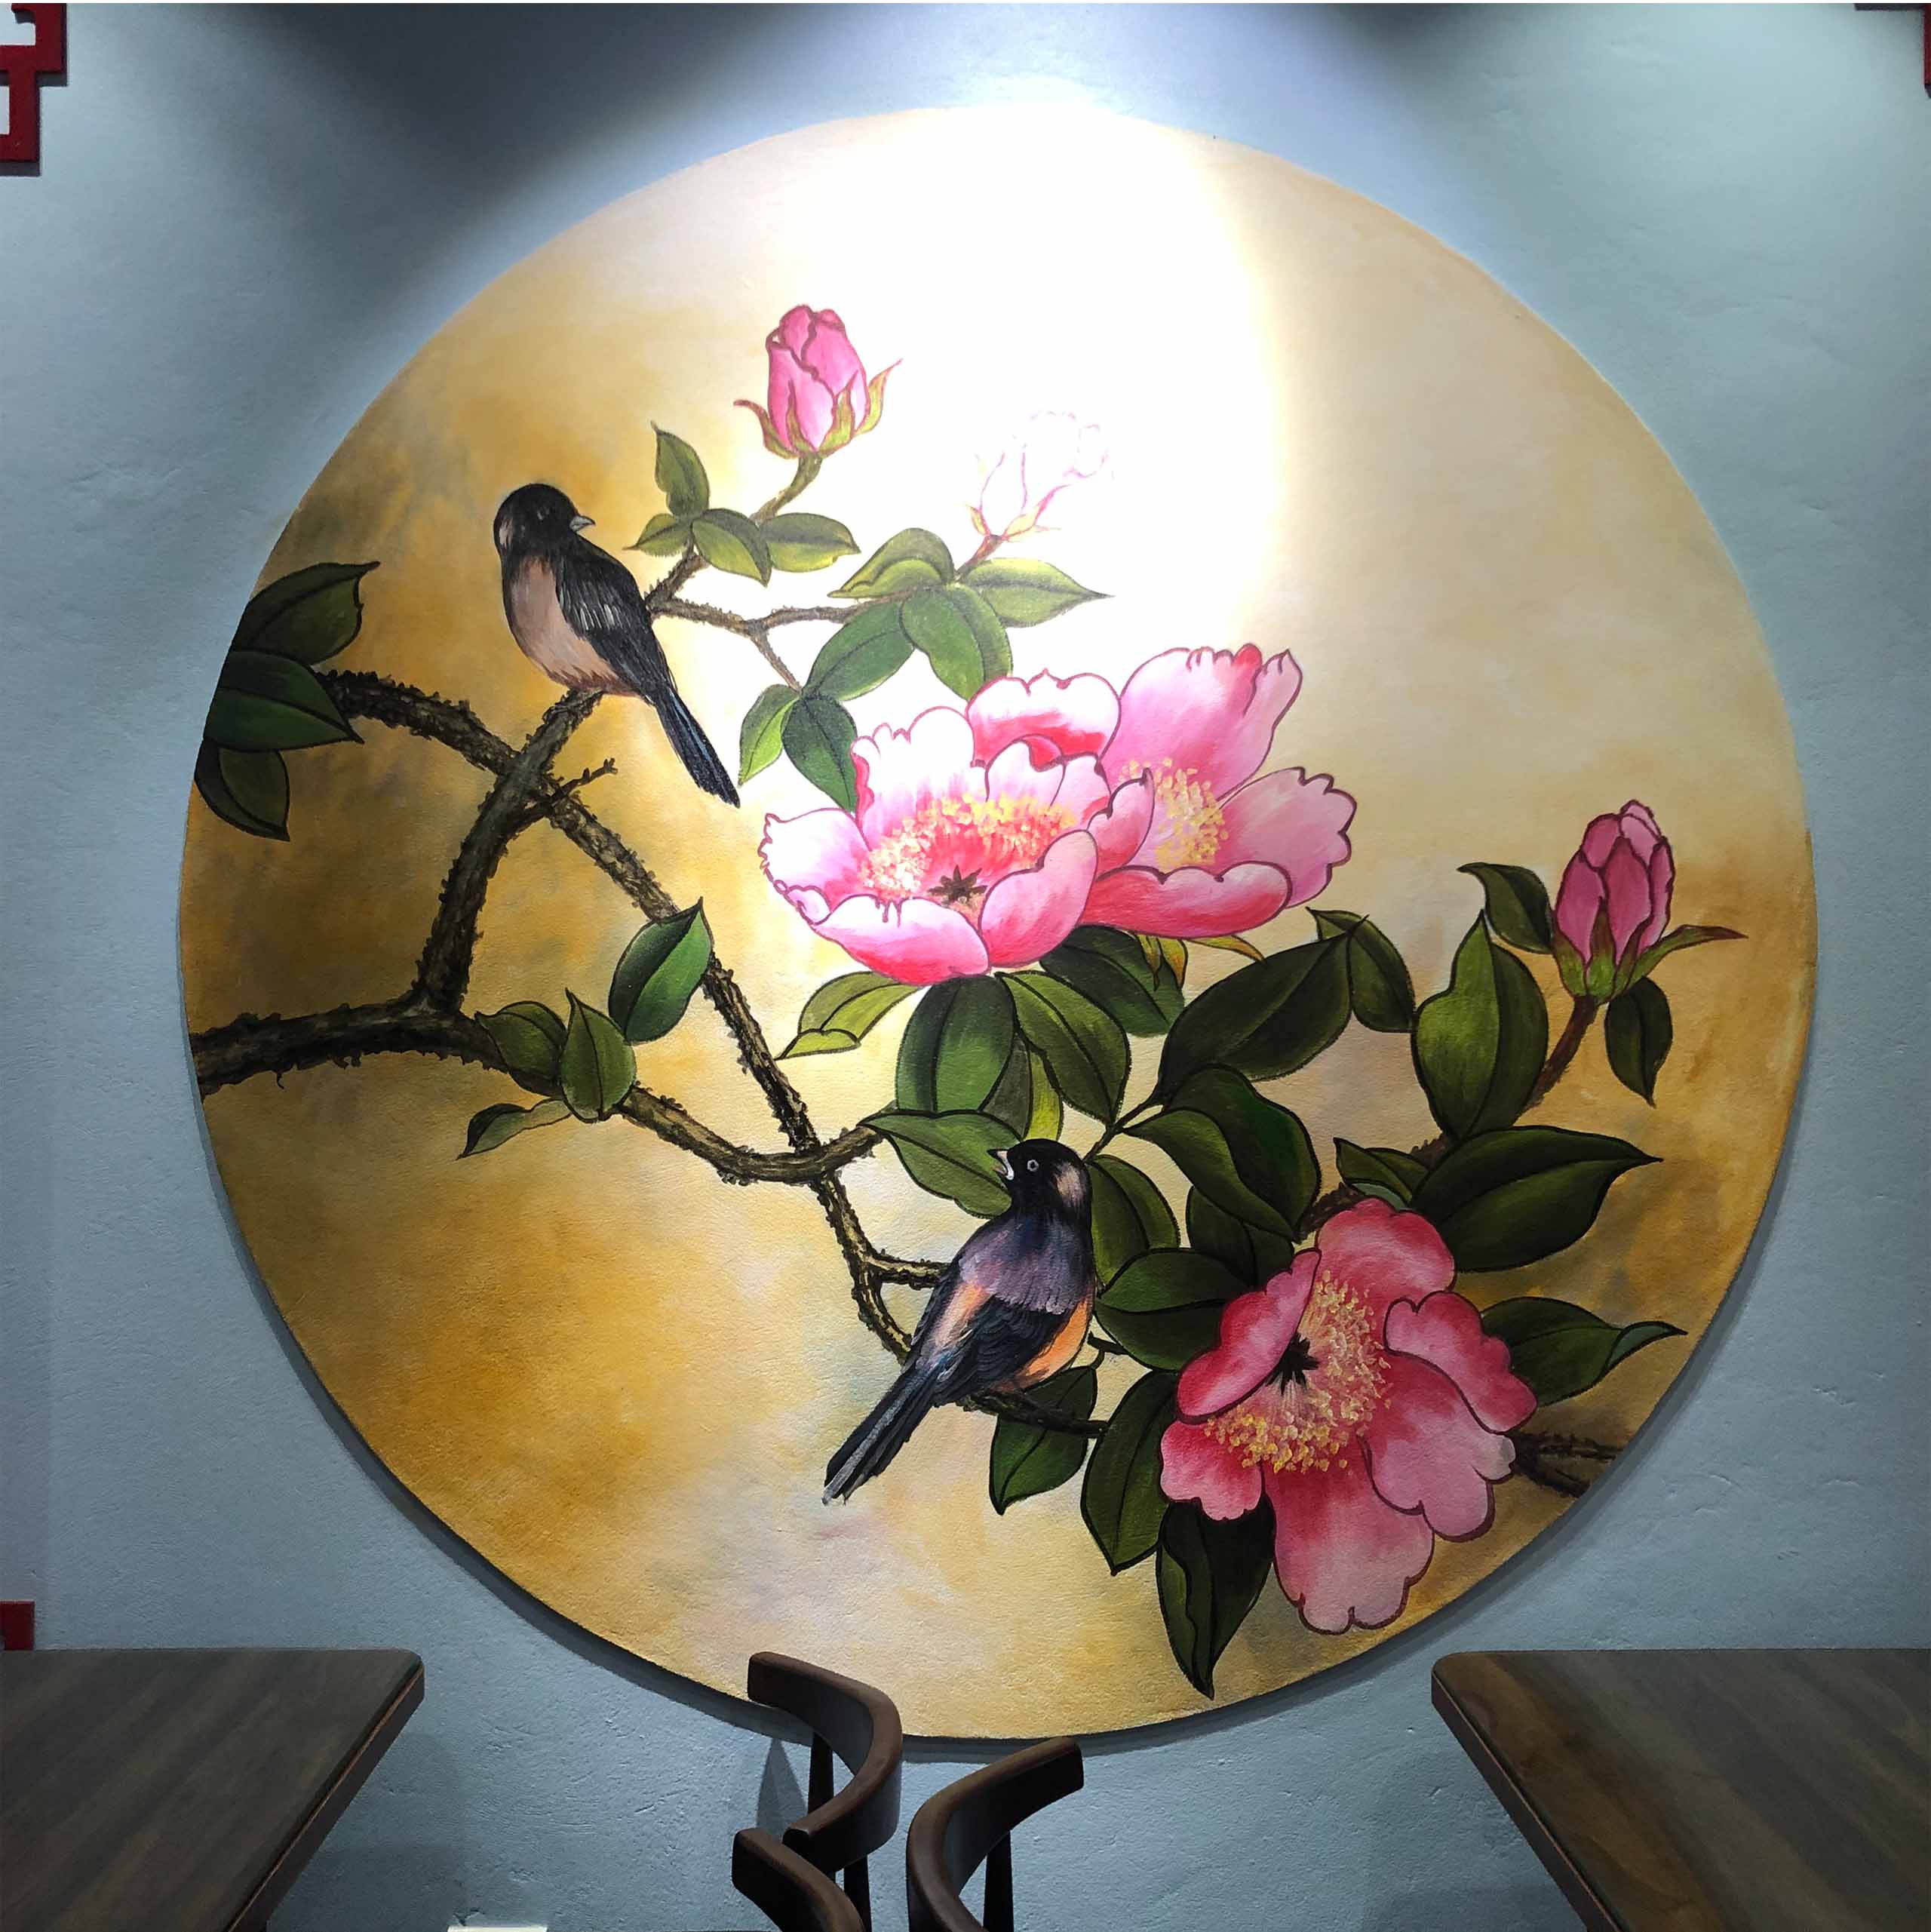 Vẽ tranh tường Hoa Mẫu Đơn tại nhà hàng ở Thành phố Thái Bình - TT186LHAR